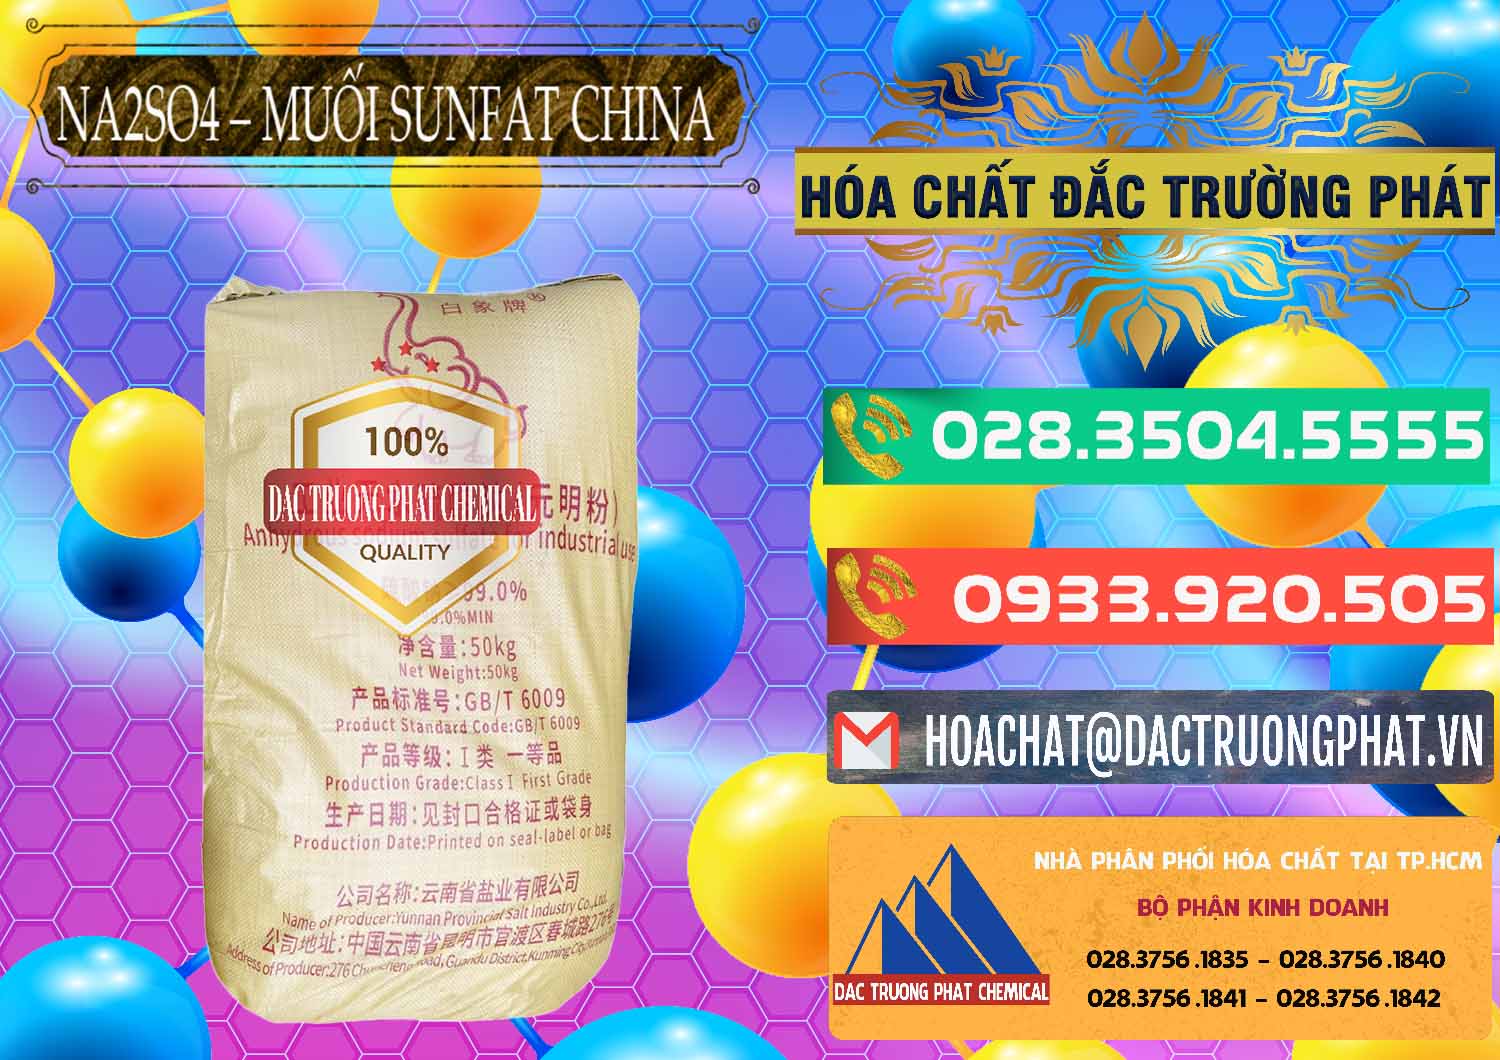 Chuyên cung ứng & bán Sodium Sulphate - Muối Sunfat Na2SO4 Logo Con Voi Trung Quốc China - 0409 - Đơn vị phân phối & cung cấp hóa chất tại TP.HCM - congtyhoachat.com.vn